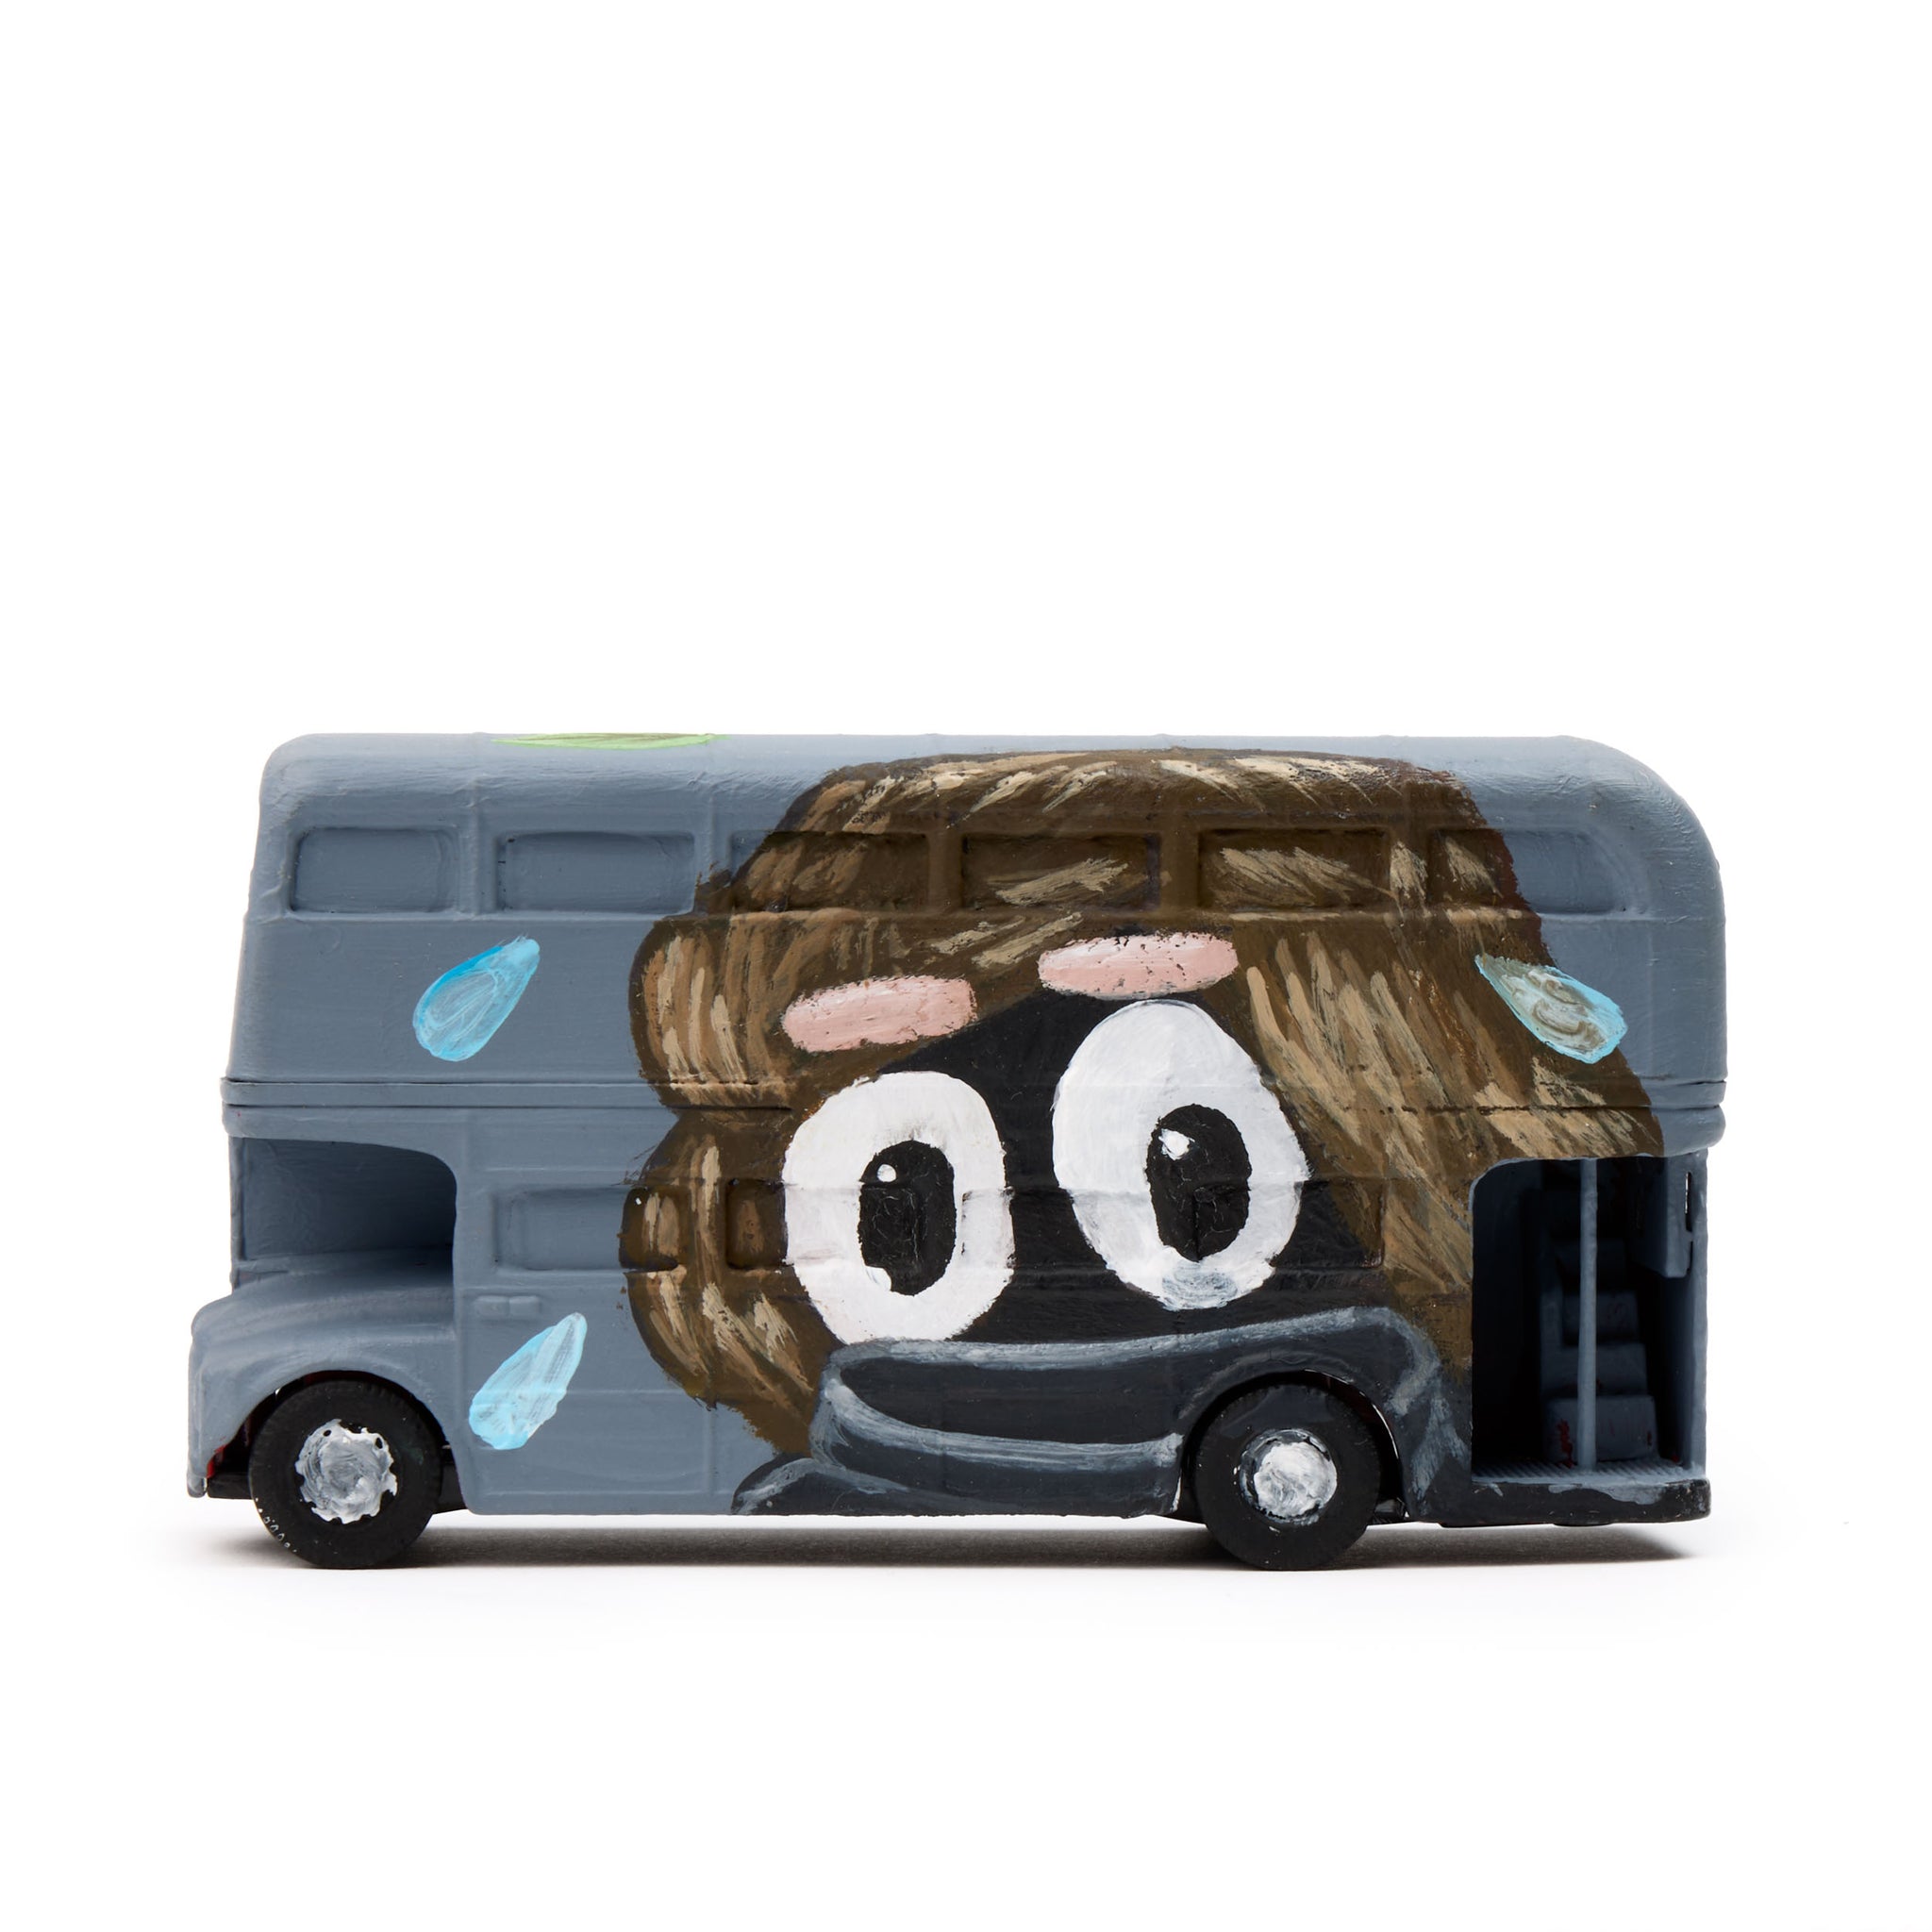 Willem Hoeffnagel Toy Bus